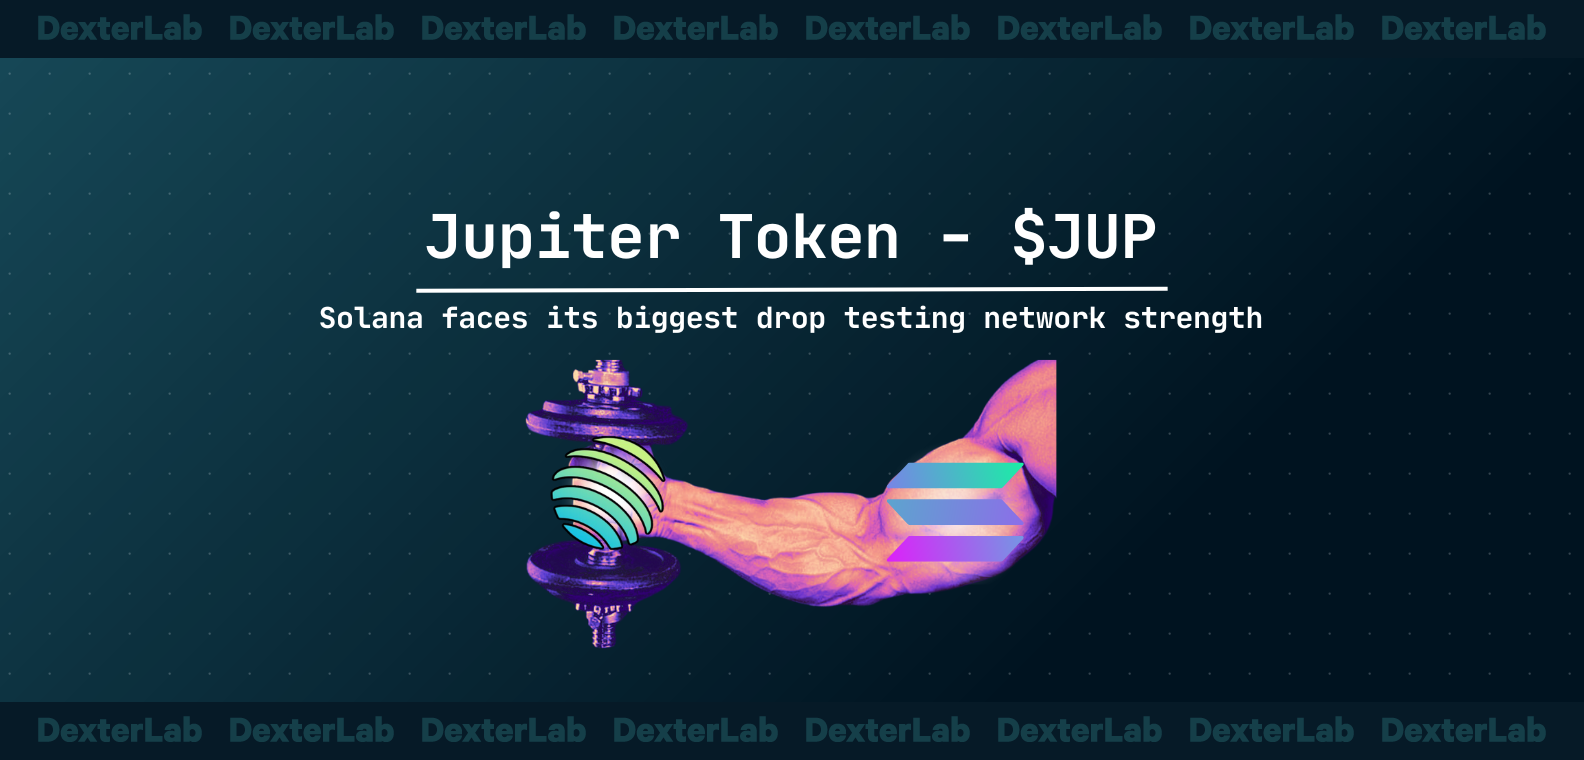 Jupiter Token - $JUP: Biggest Drop on Solana